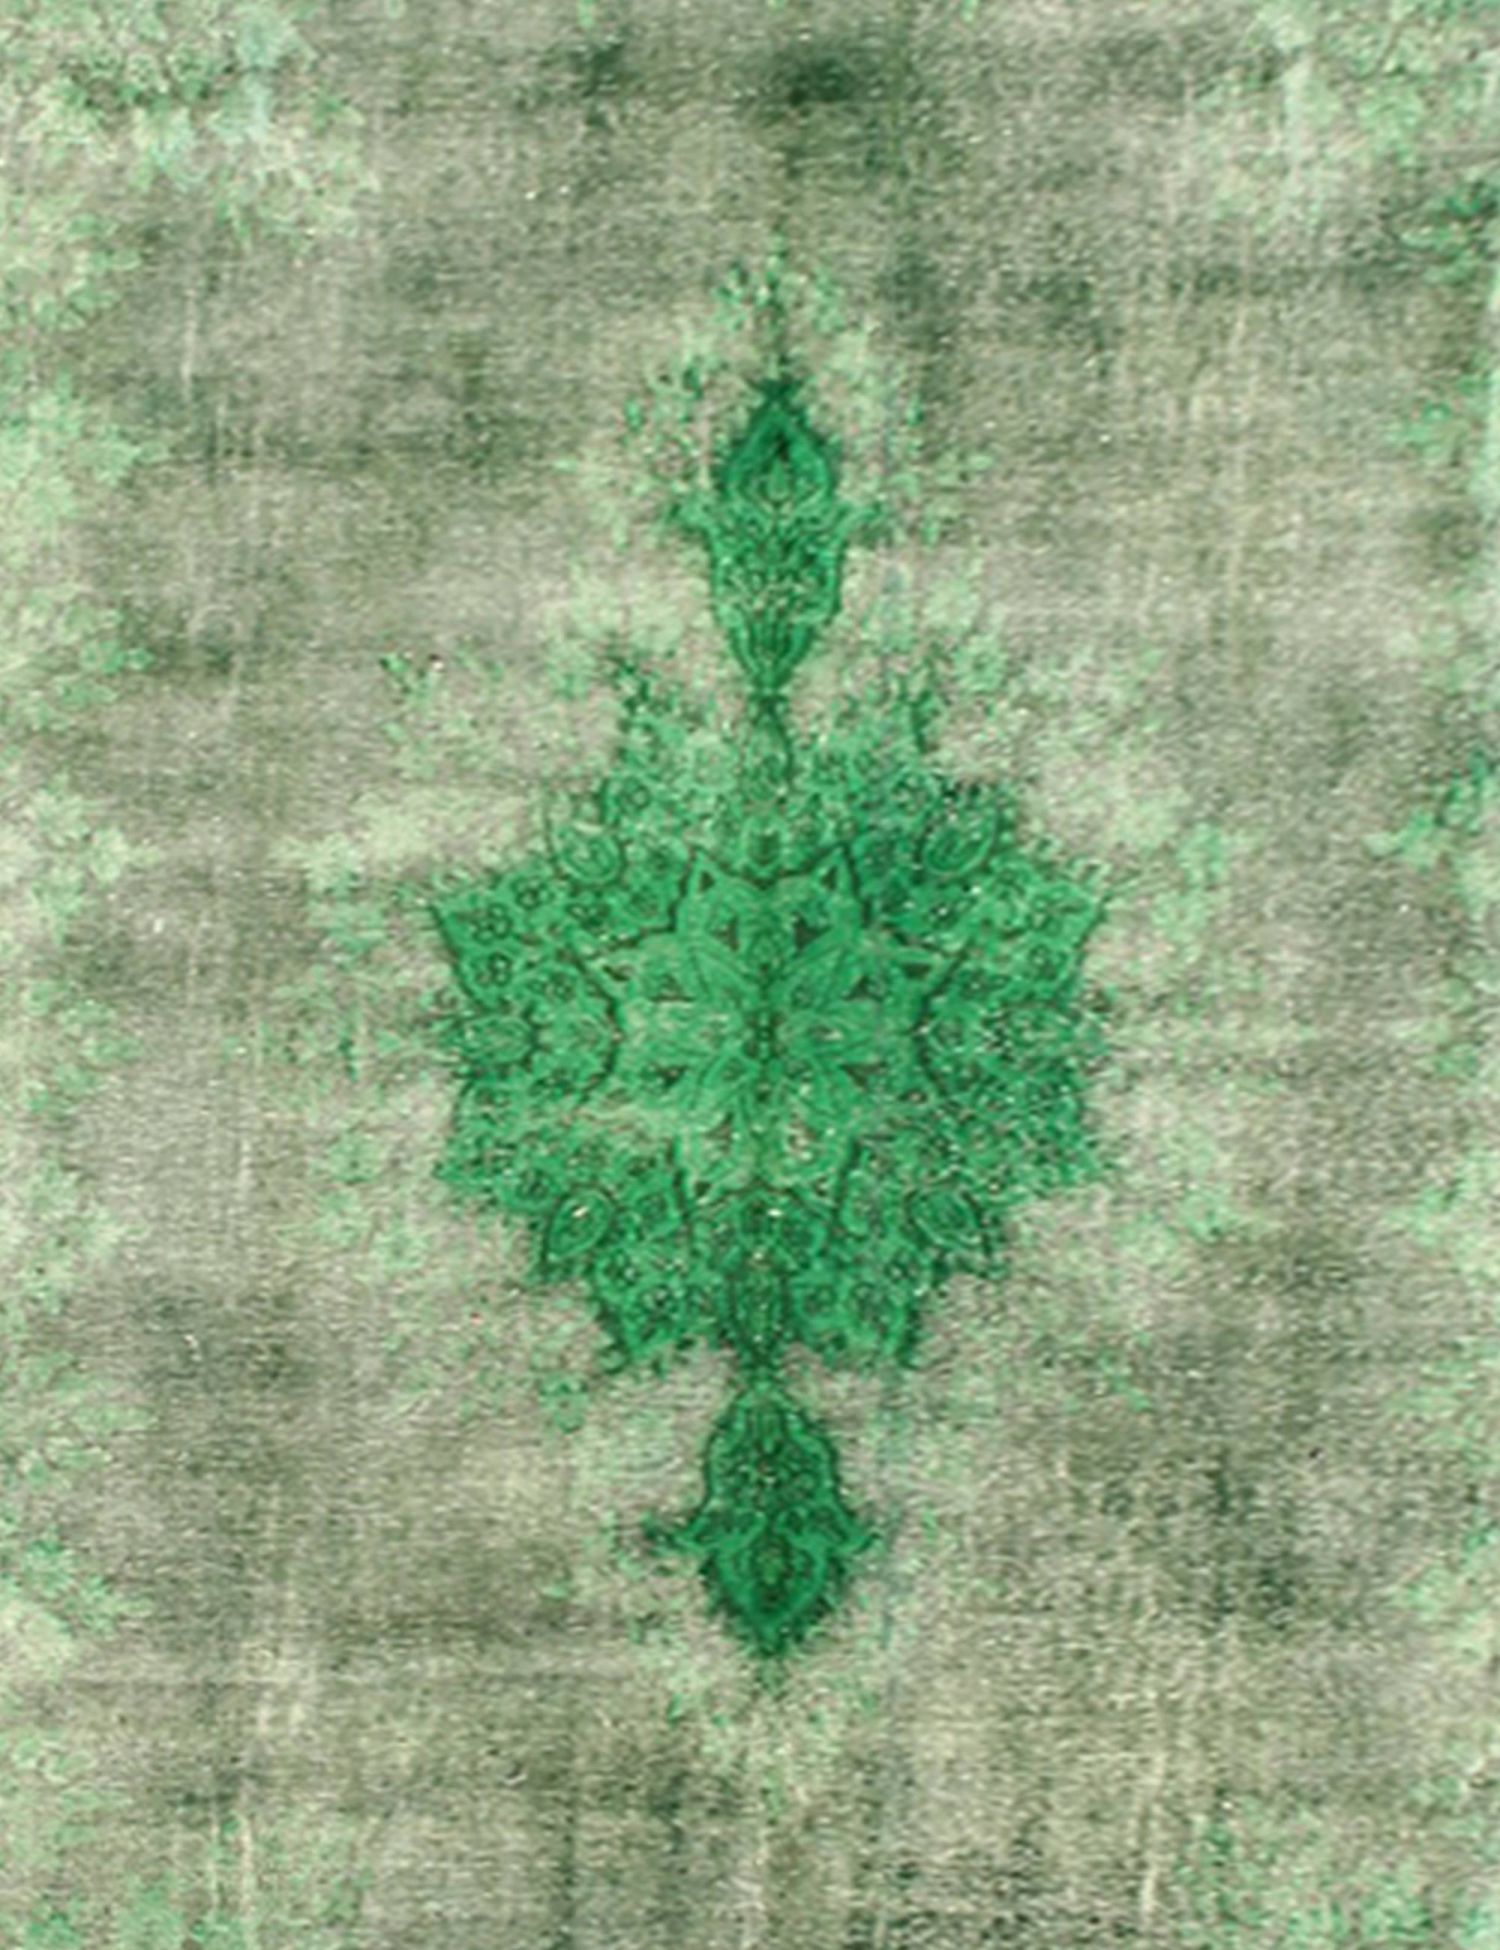 Persischer Vintage Teppich  grün <br/>415 x 300 cm